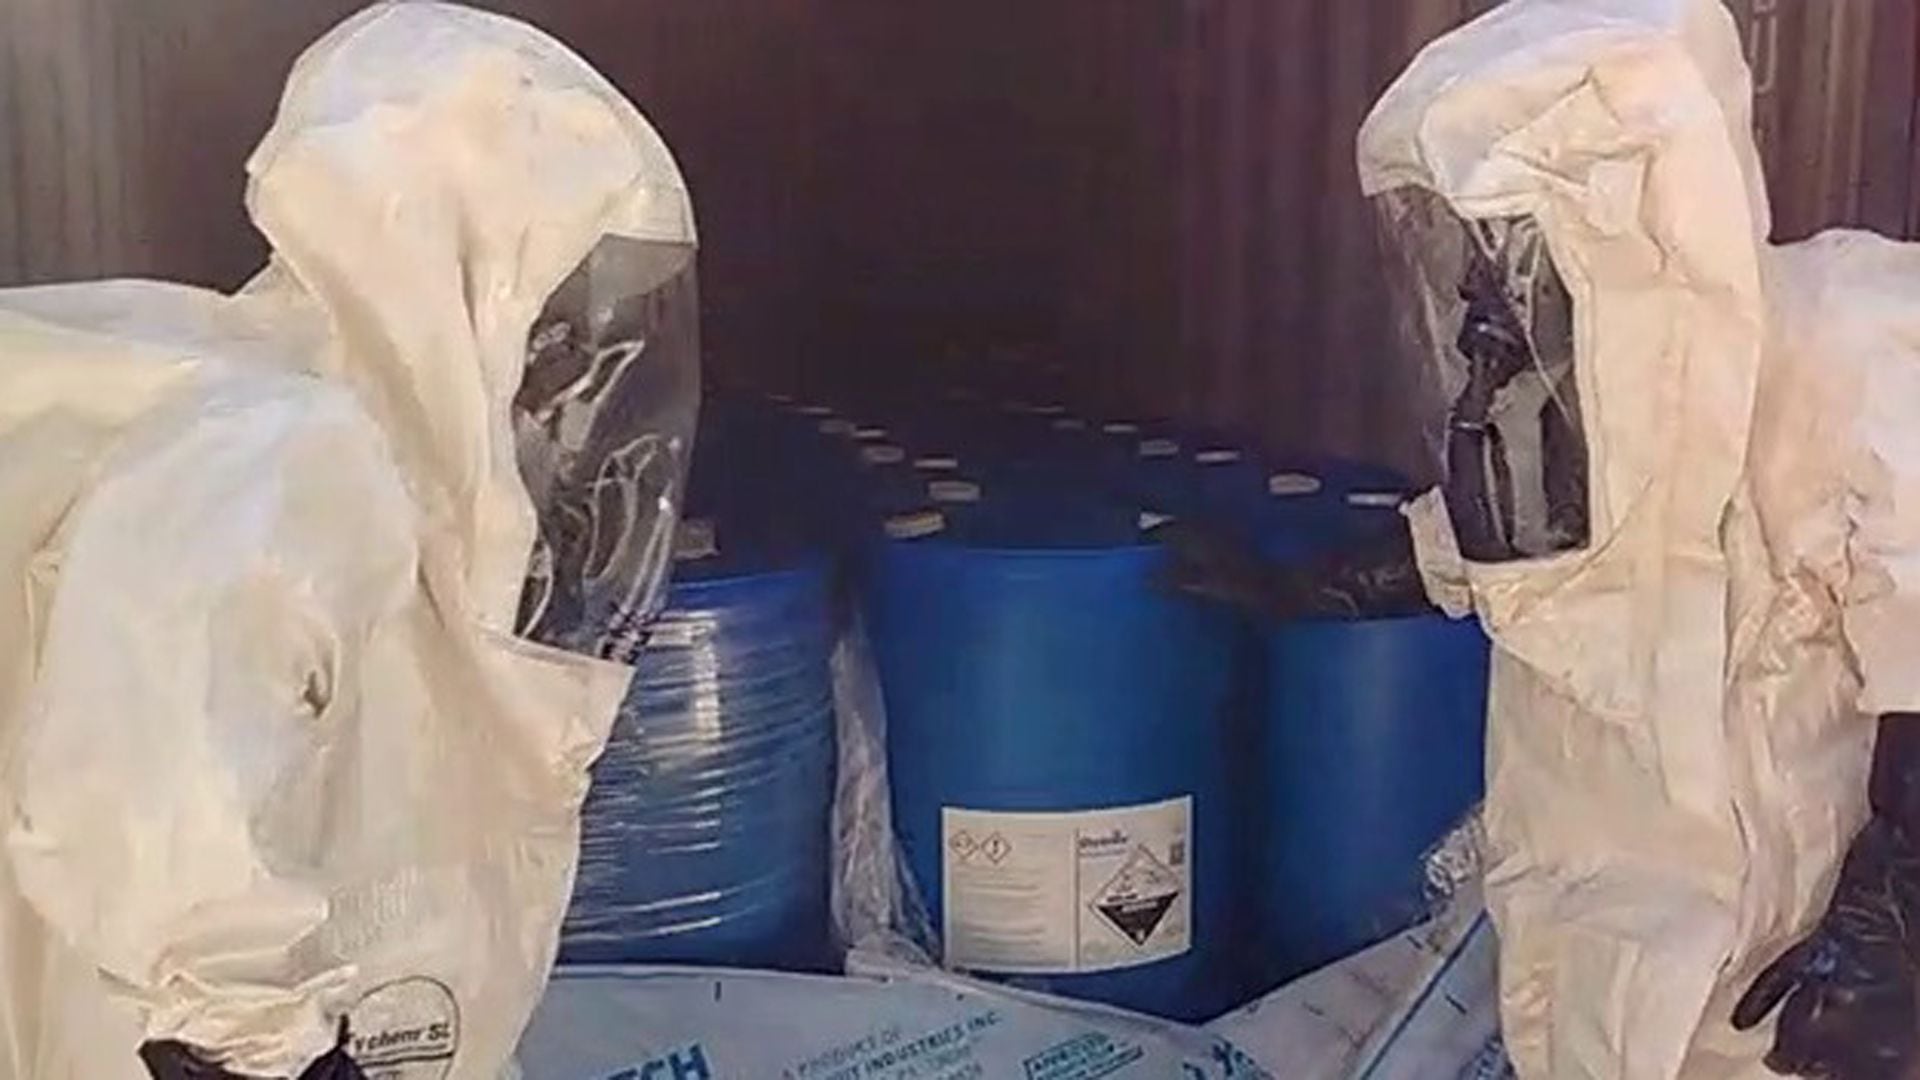 Los precursores químicos que eran importados en México eran utilizados para fabricar metanfetamina (Foto: Ministerio de Seguridad de la Nación) 